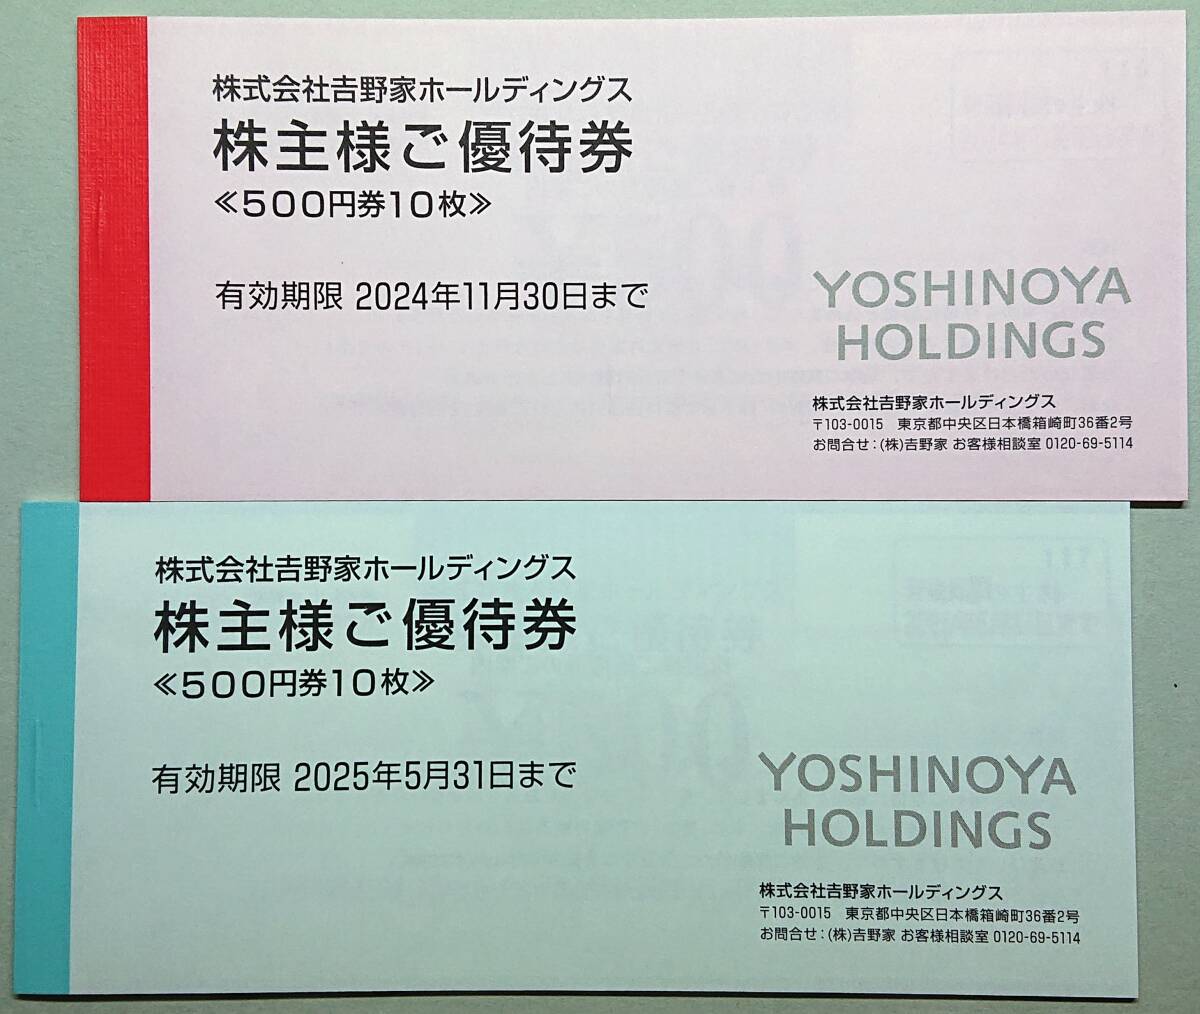 ^ Yoshino дом акционер пригласительный билет 500 иен ×10 листов ×2 шт. *10,000 иен минут *2 вид. иметь временные ограничения действия Vy